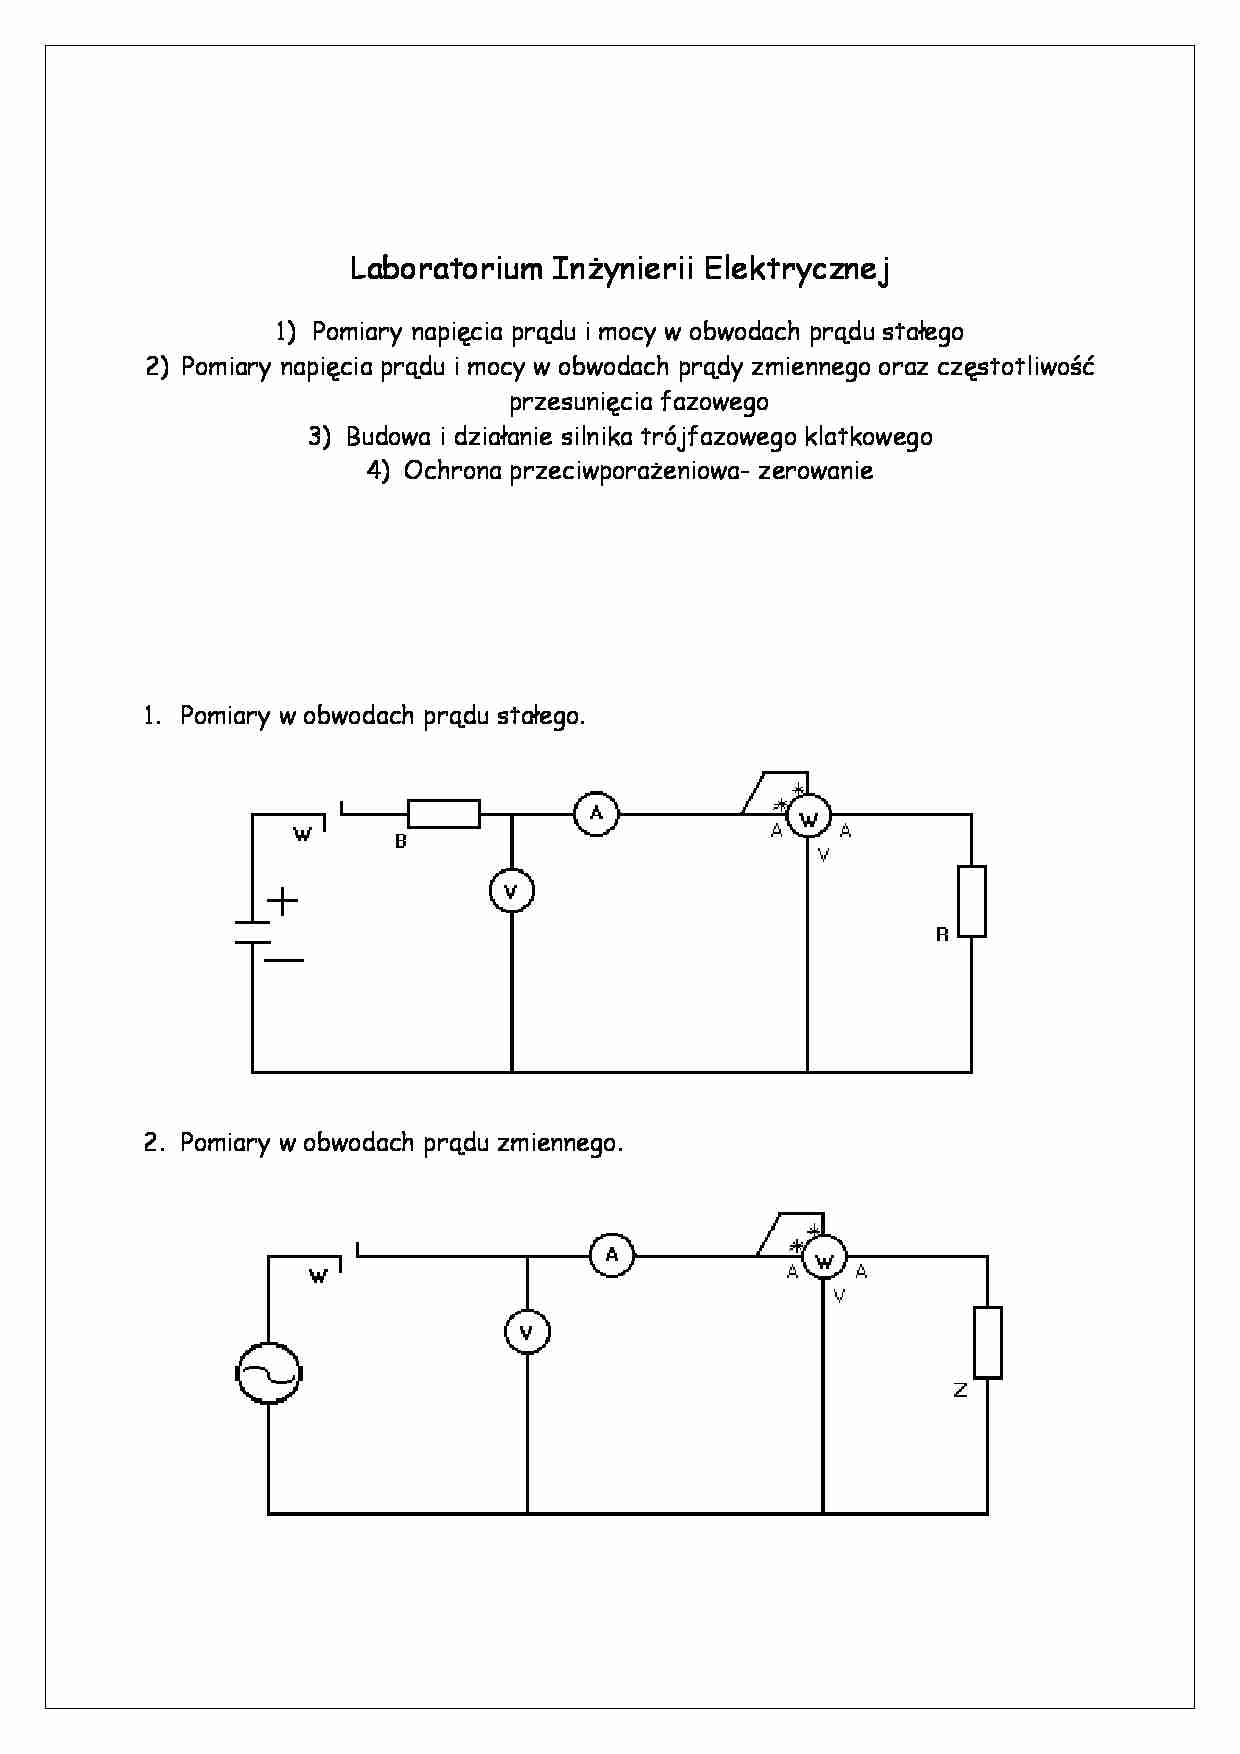 Sprawozdanie 1 z laboratorium inżynierii elektrycznej - strona 1